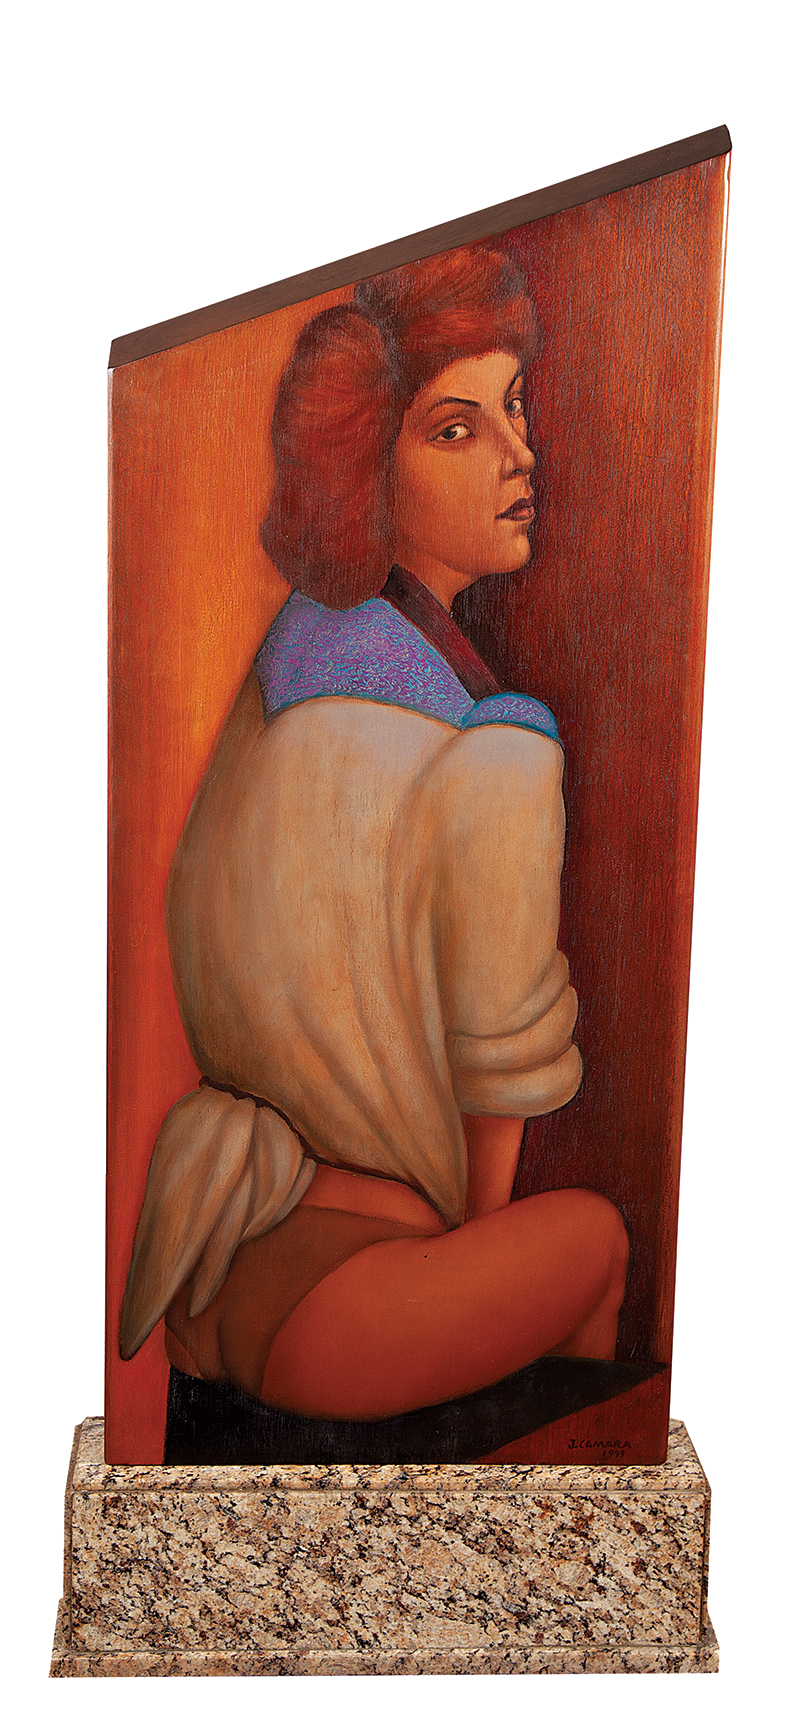 JOÃO CÂMARA - `Mulheres seminuas` - Objeto - pintura frente e verso. Óleo sobre madeira - Ass.dat.1999 inf. dir. - 102 x 45 cm